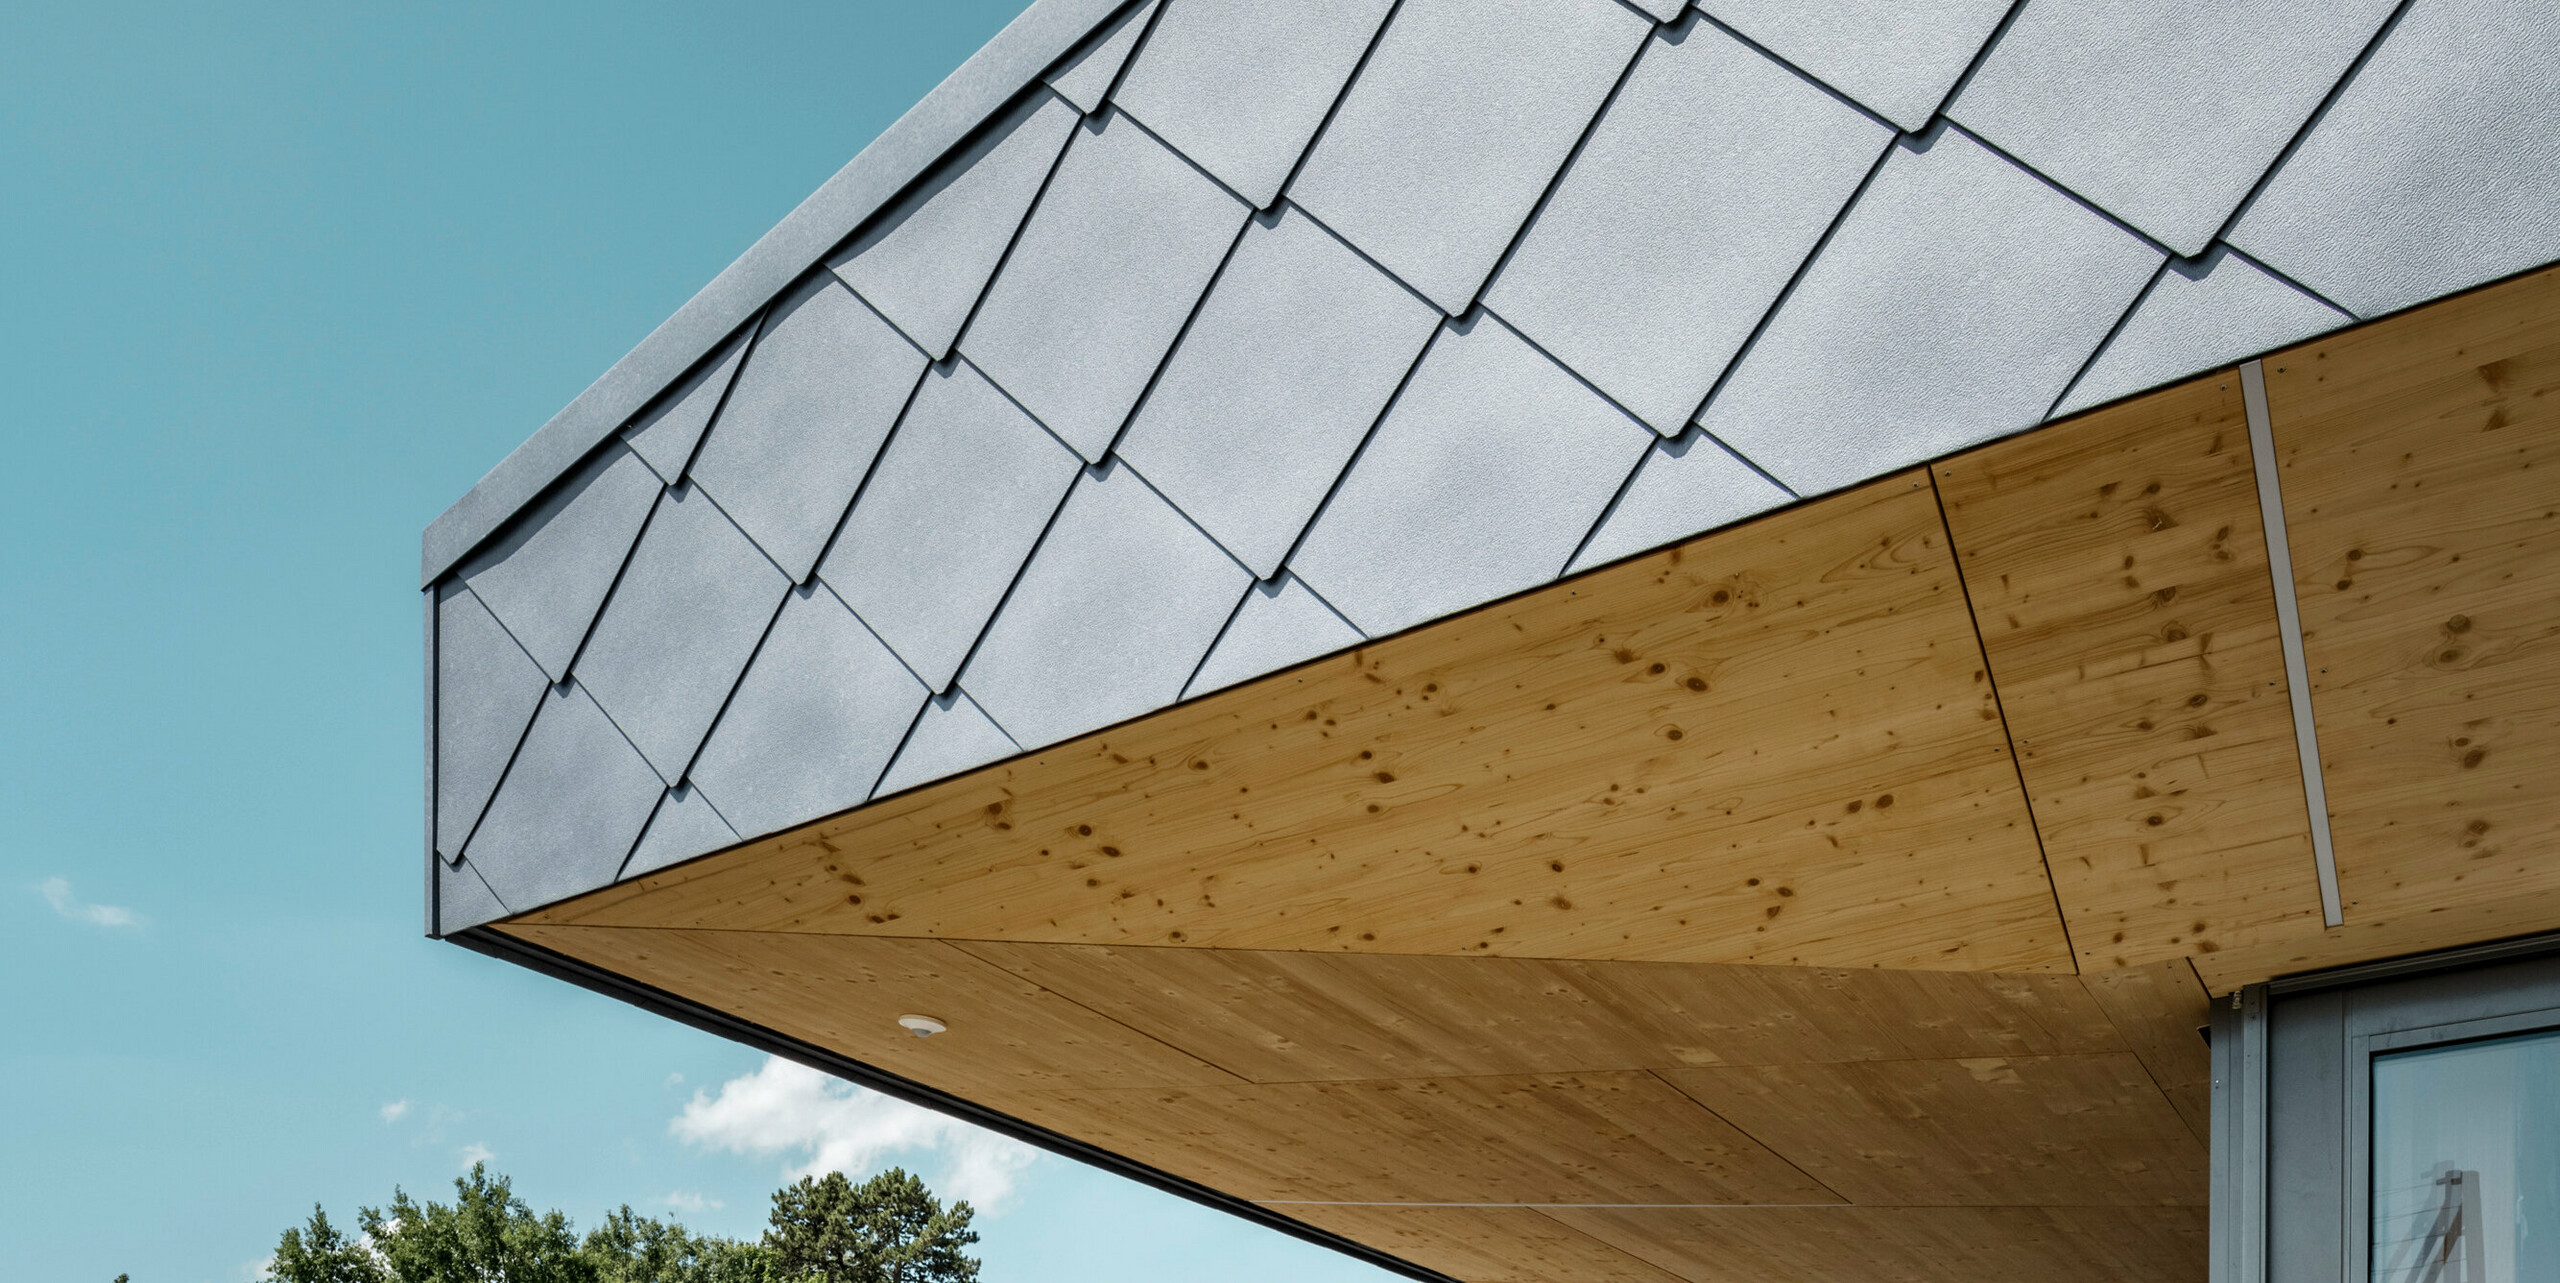 Detailaufnahme des innovativen Dachübergangs einer Sportanlage in Prilly, Schweiz, mit PREFA Dach- und Wandrauten 44x44 in P.10 Steingrau. Die Rauten aus Aluminium bieten eine ästhetische und funktionale Bedeckung, die nahtlos in die warme, natürliche Holzuntersicht übergeht. Die Kombination von langlebigen Aluminiumelementen mit dem natürlichen Holzakzent zeugt von einem architektonischen Ansatz, der Nachhaltigkeit und modernes Design vereint.